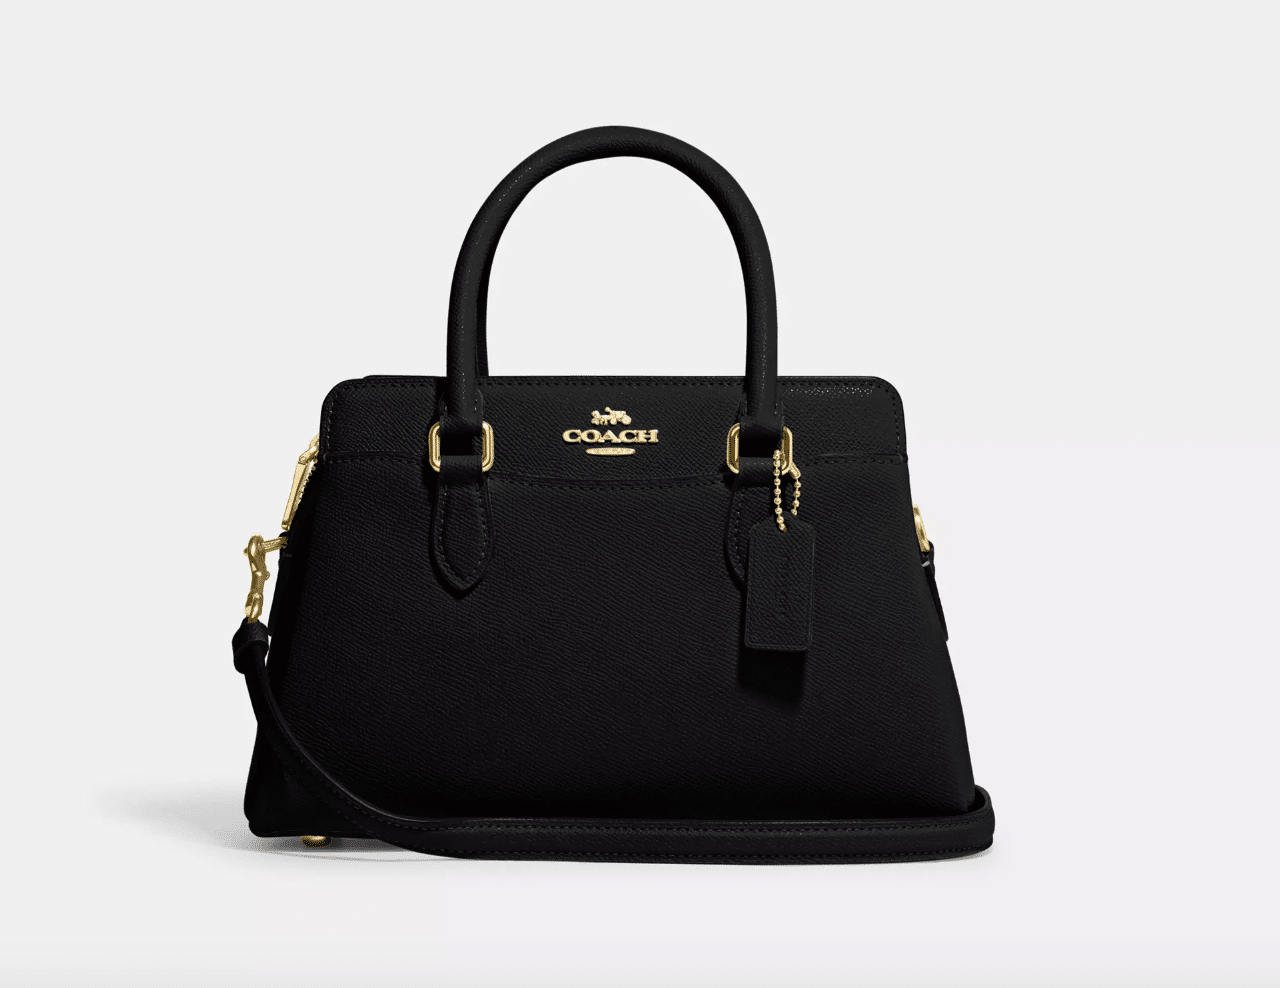 Mode: ce sac de luxe connaît une remise de 60% pendant quelques jours sur cette boutique en ligne